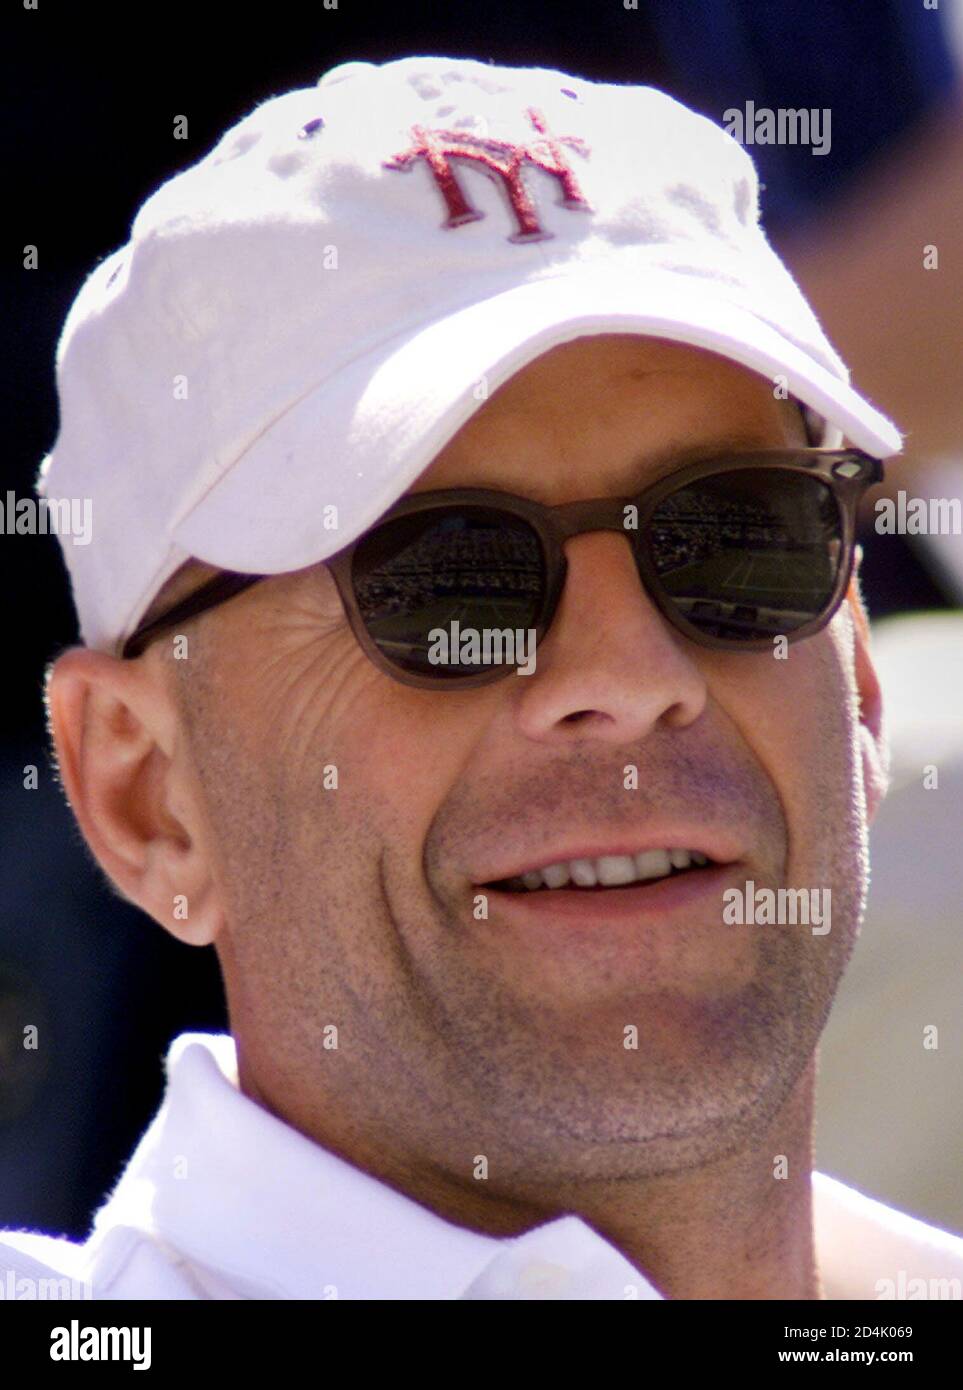 El actor Bruce Willis tiene la cancha reflejada en sus gafas de sol en partido semifinal femenino en el Campeonato Abierto de Tenis de los Estados Unidos en Nueva York